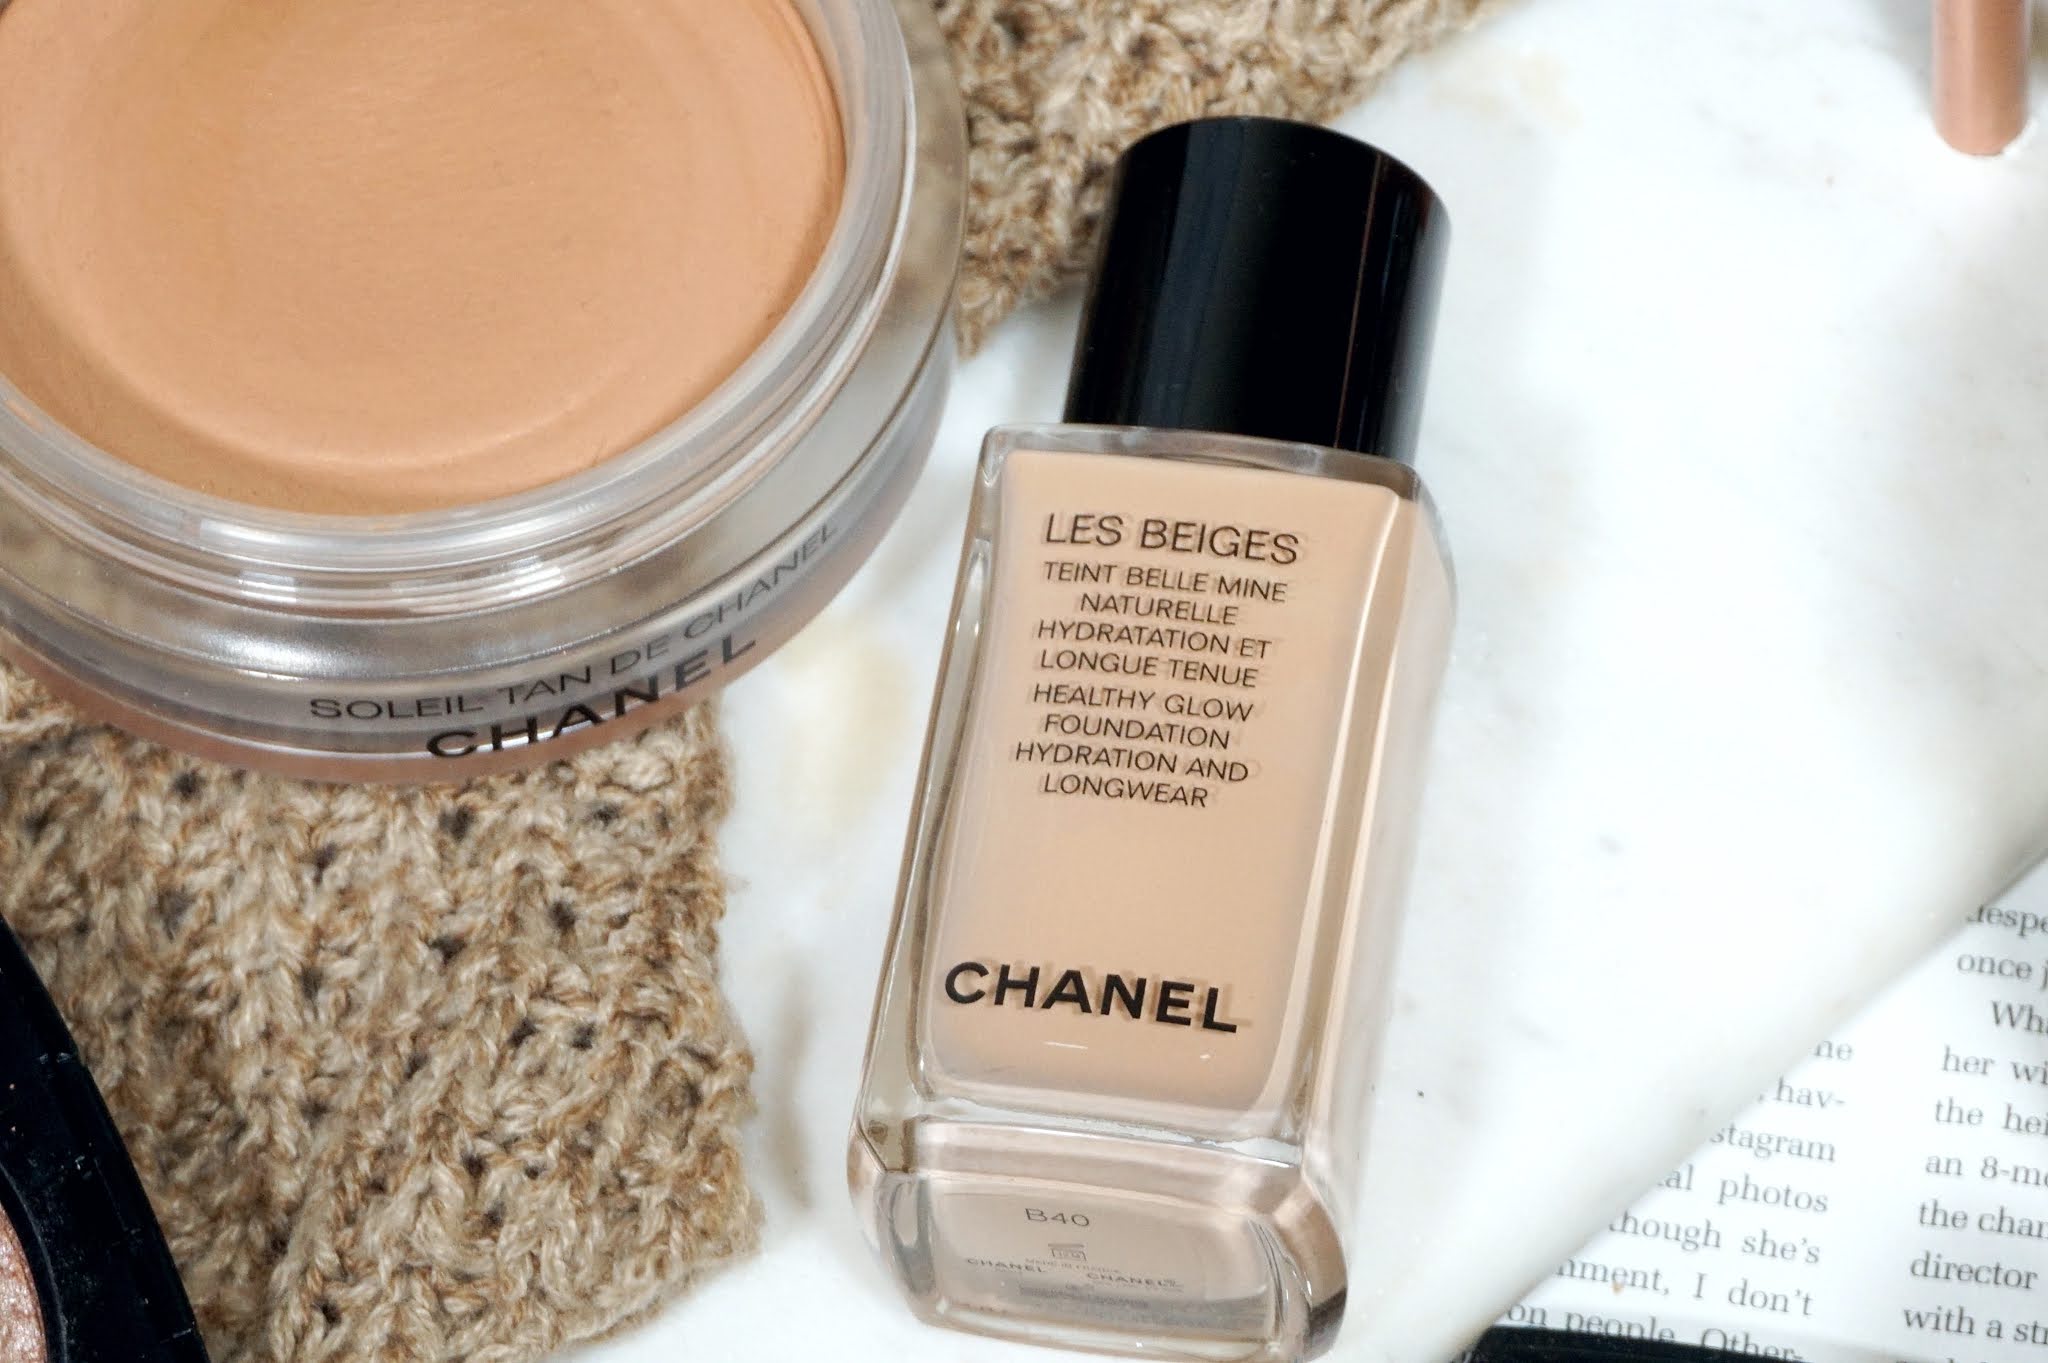 แท้ รองพื้น Chanel Les beiges healthy glow foundation hydration and longwear  สี B20 ขาวกลาง จังหวัดปทุมธานี official shop